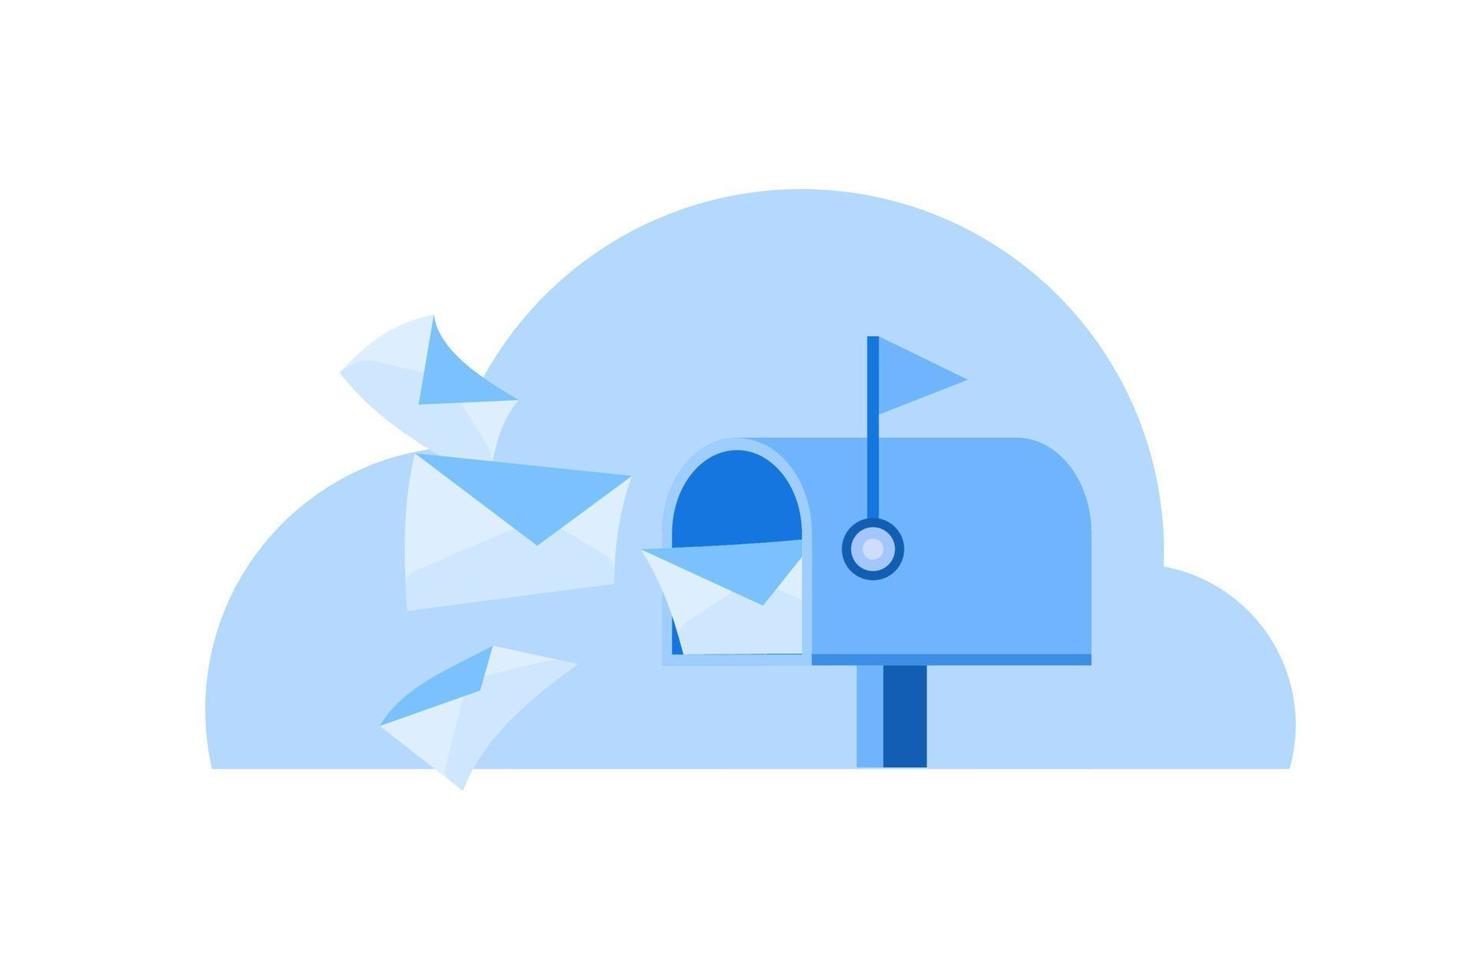 Briefkasten mit blauer Farbe der flachen Vektorillustration des Postbriefes für Grafikdesignelement oder Schnittstellendesign vektor